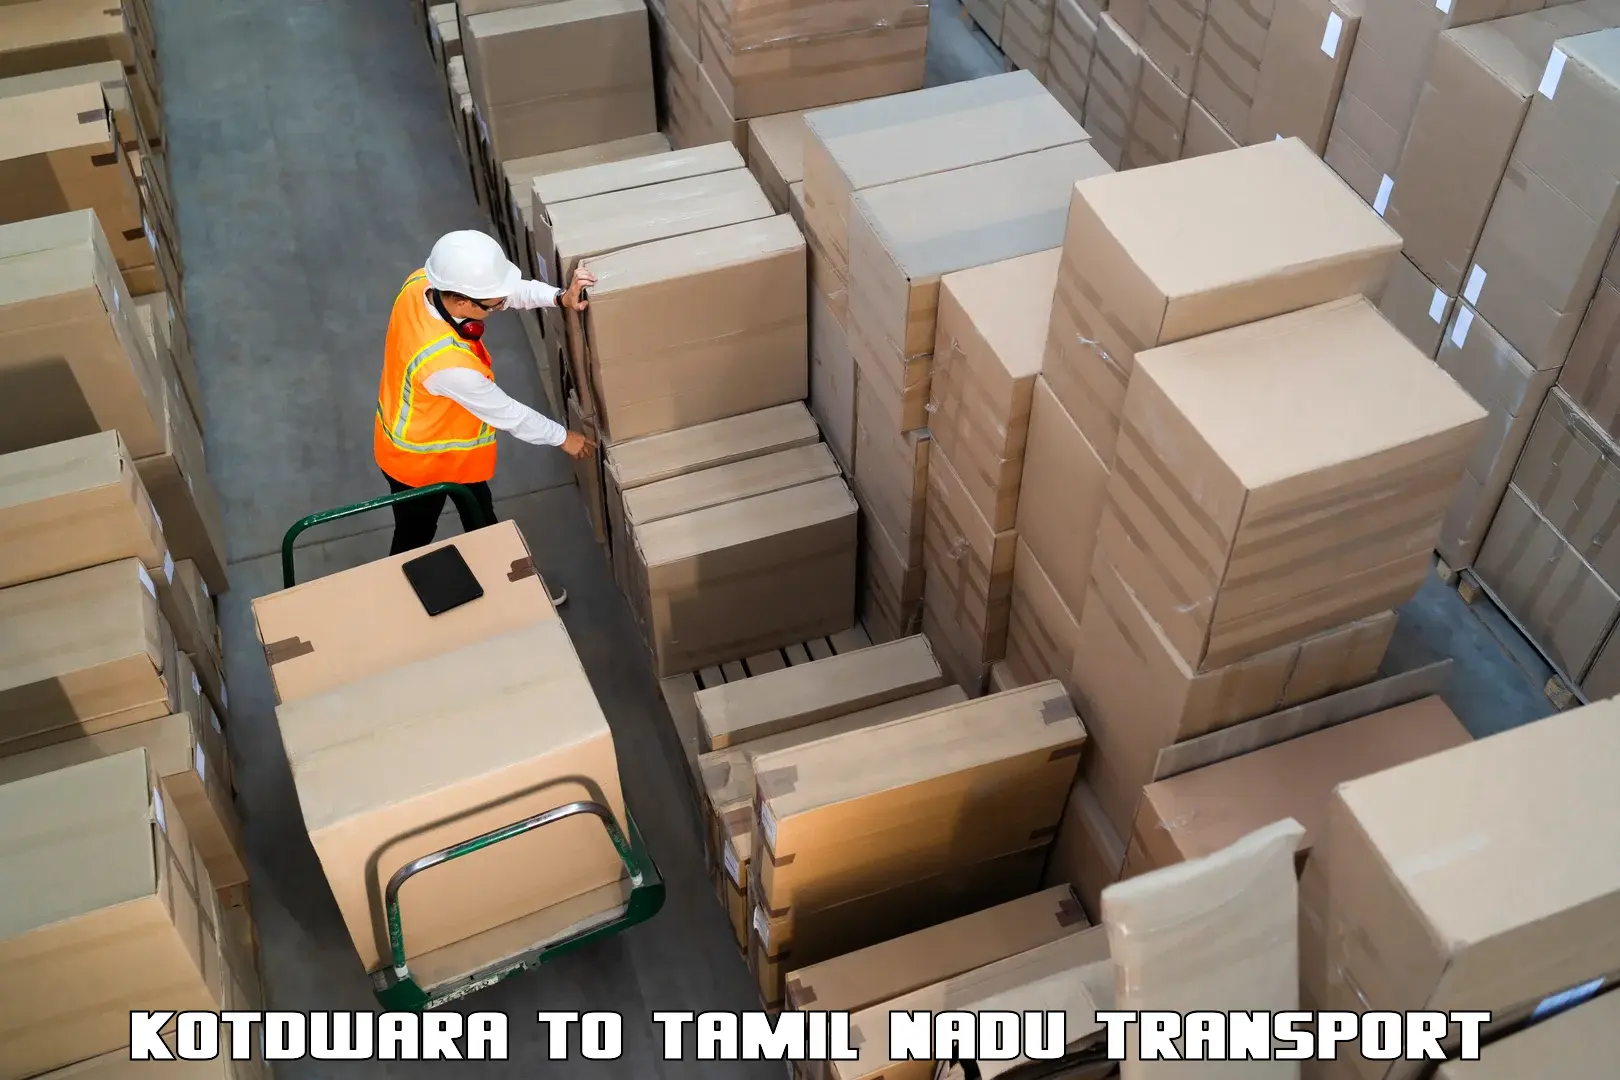 Luggage transport services Kotdwara to Thoppur